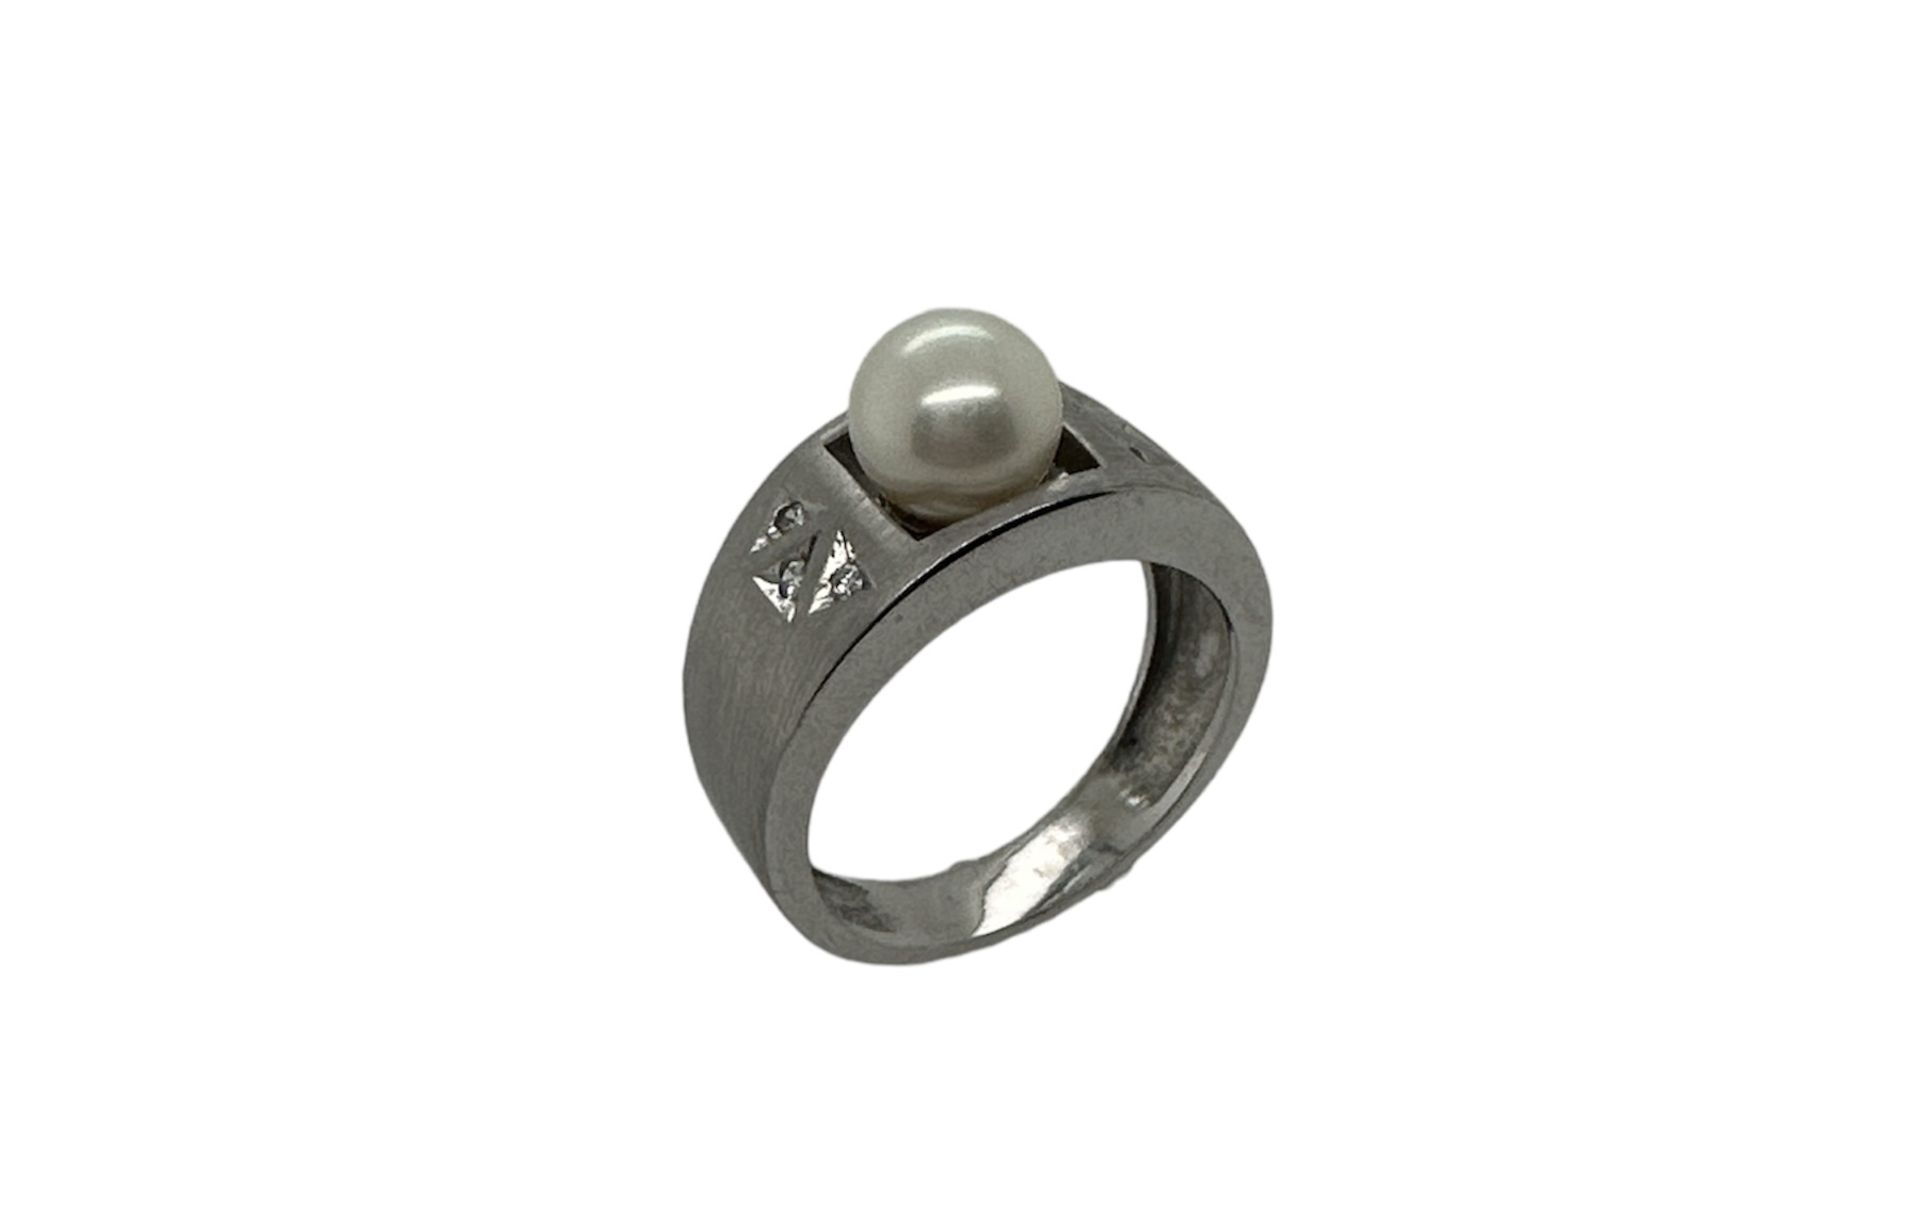 Ring 6.4g 585/- Weissgold mit 6 Diamanten zus. ca. 0.09 ct. und Perle. Ringgroesse ca. 51